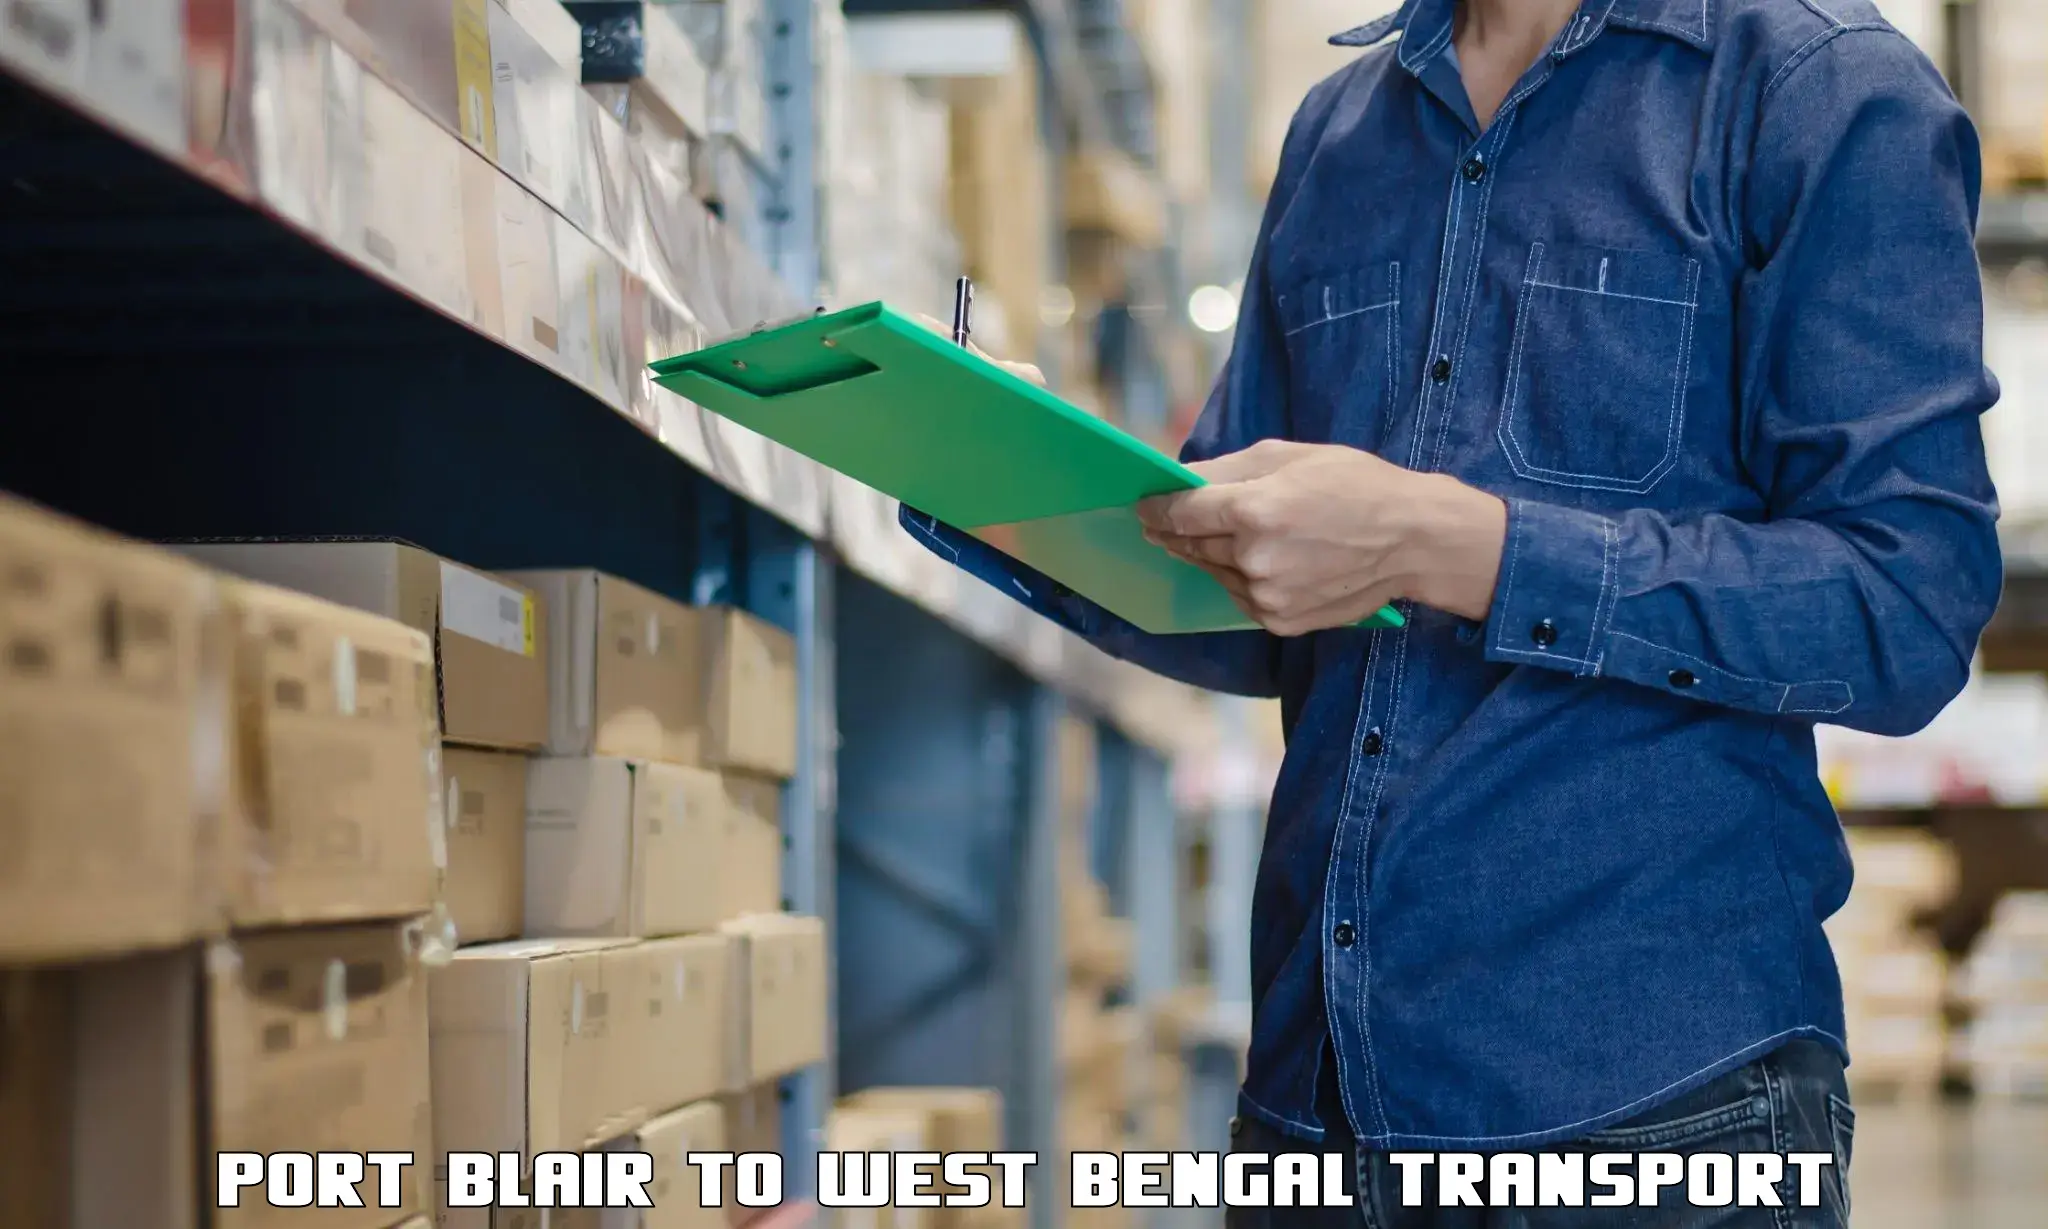 Pick up transport service Port Blair to Manteswar